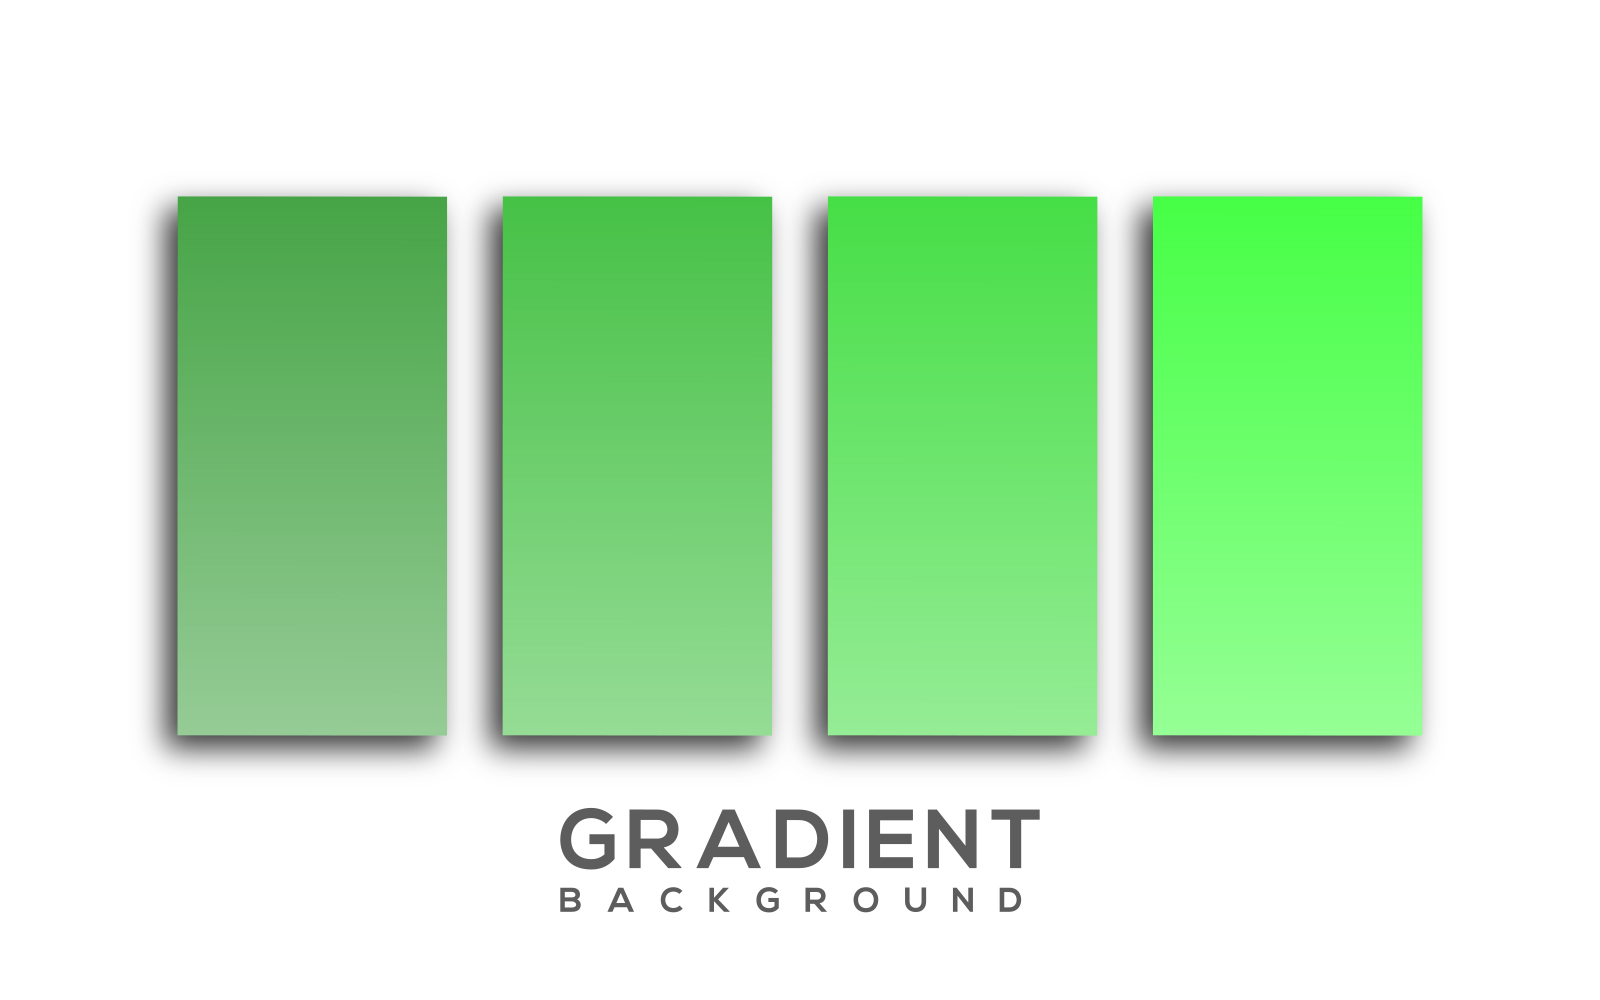 Green Gradient Background Vector